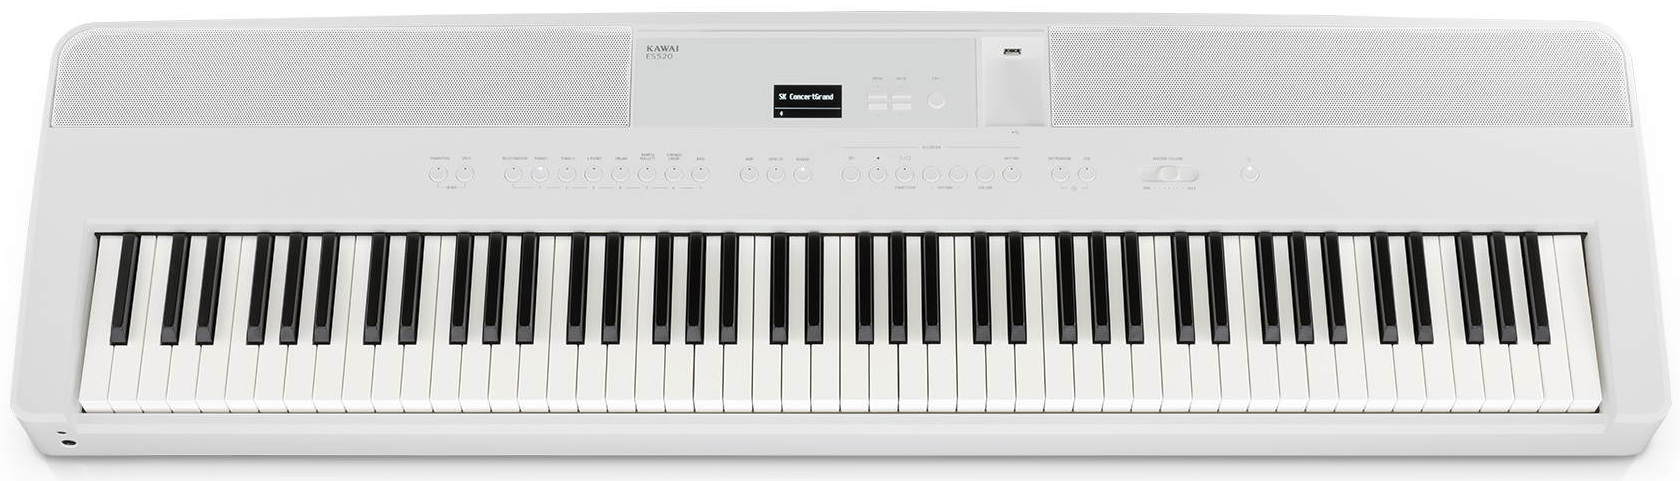 Цифровые пианино Kawai ES520W незабываемая классическая и эстрадная музыка в легкой обработке для фортепиано поливода б а